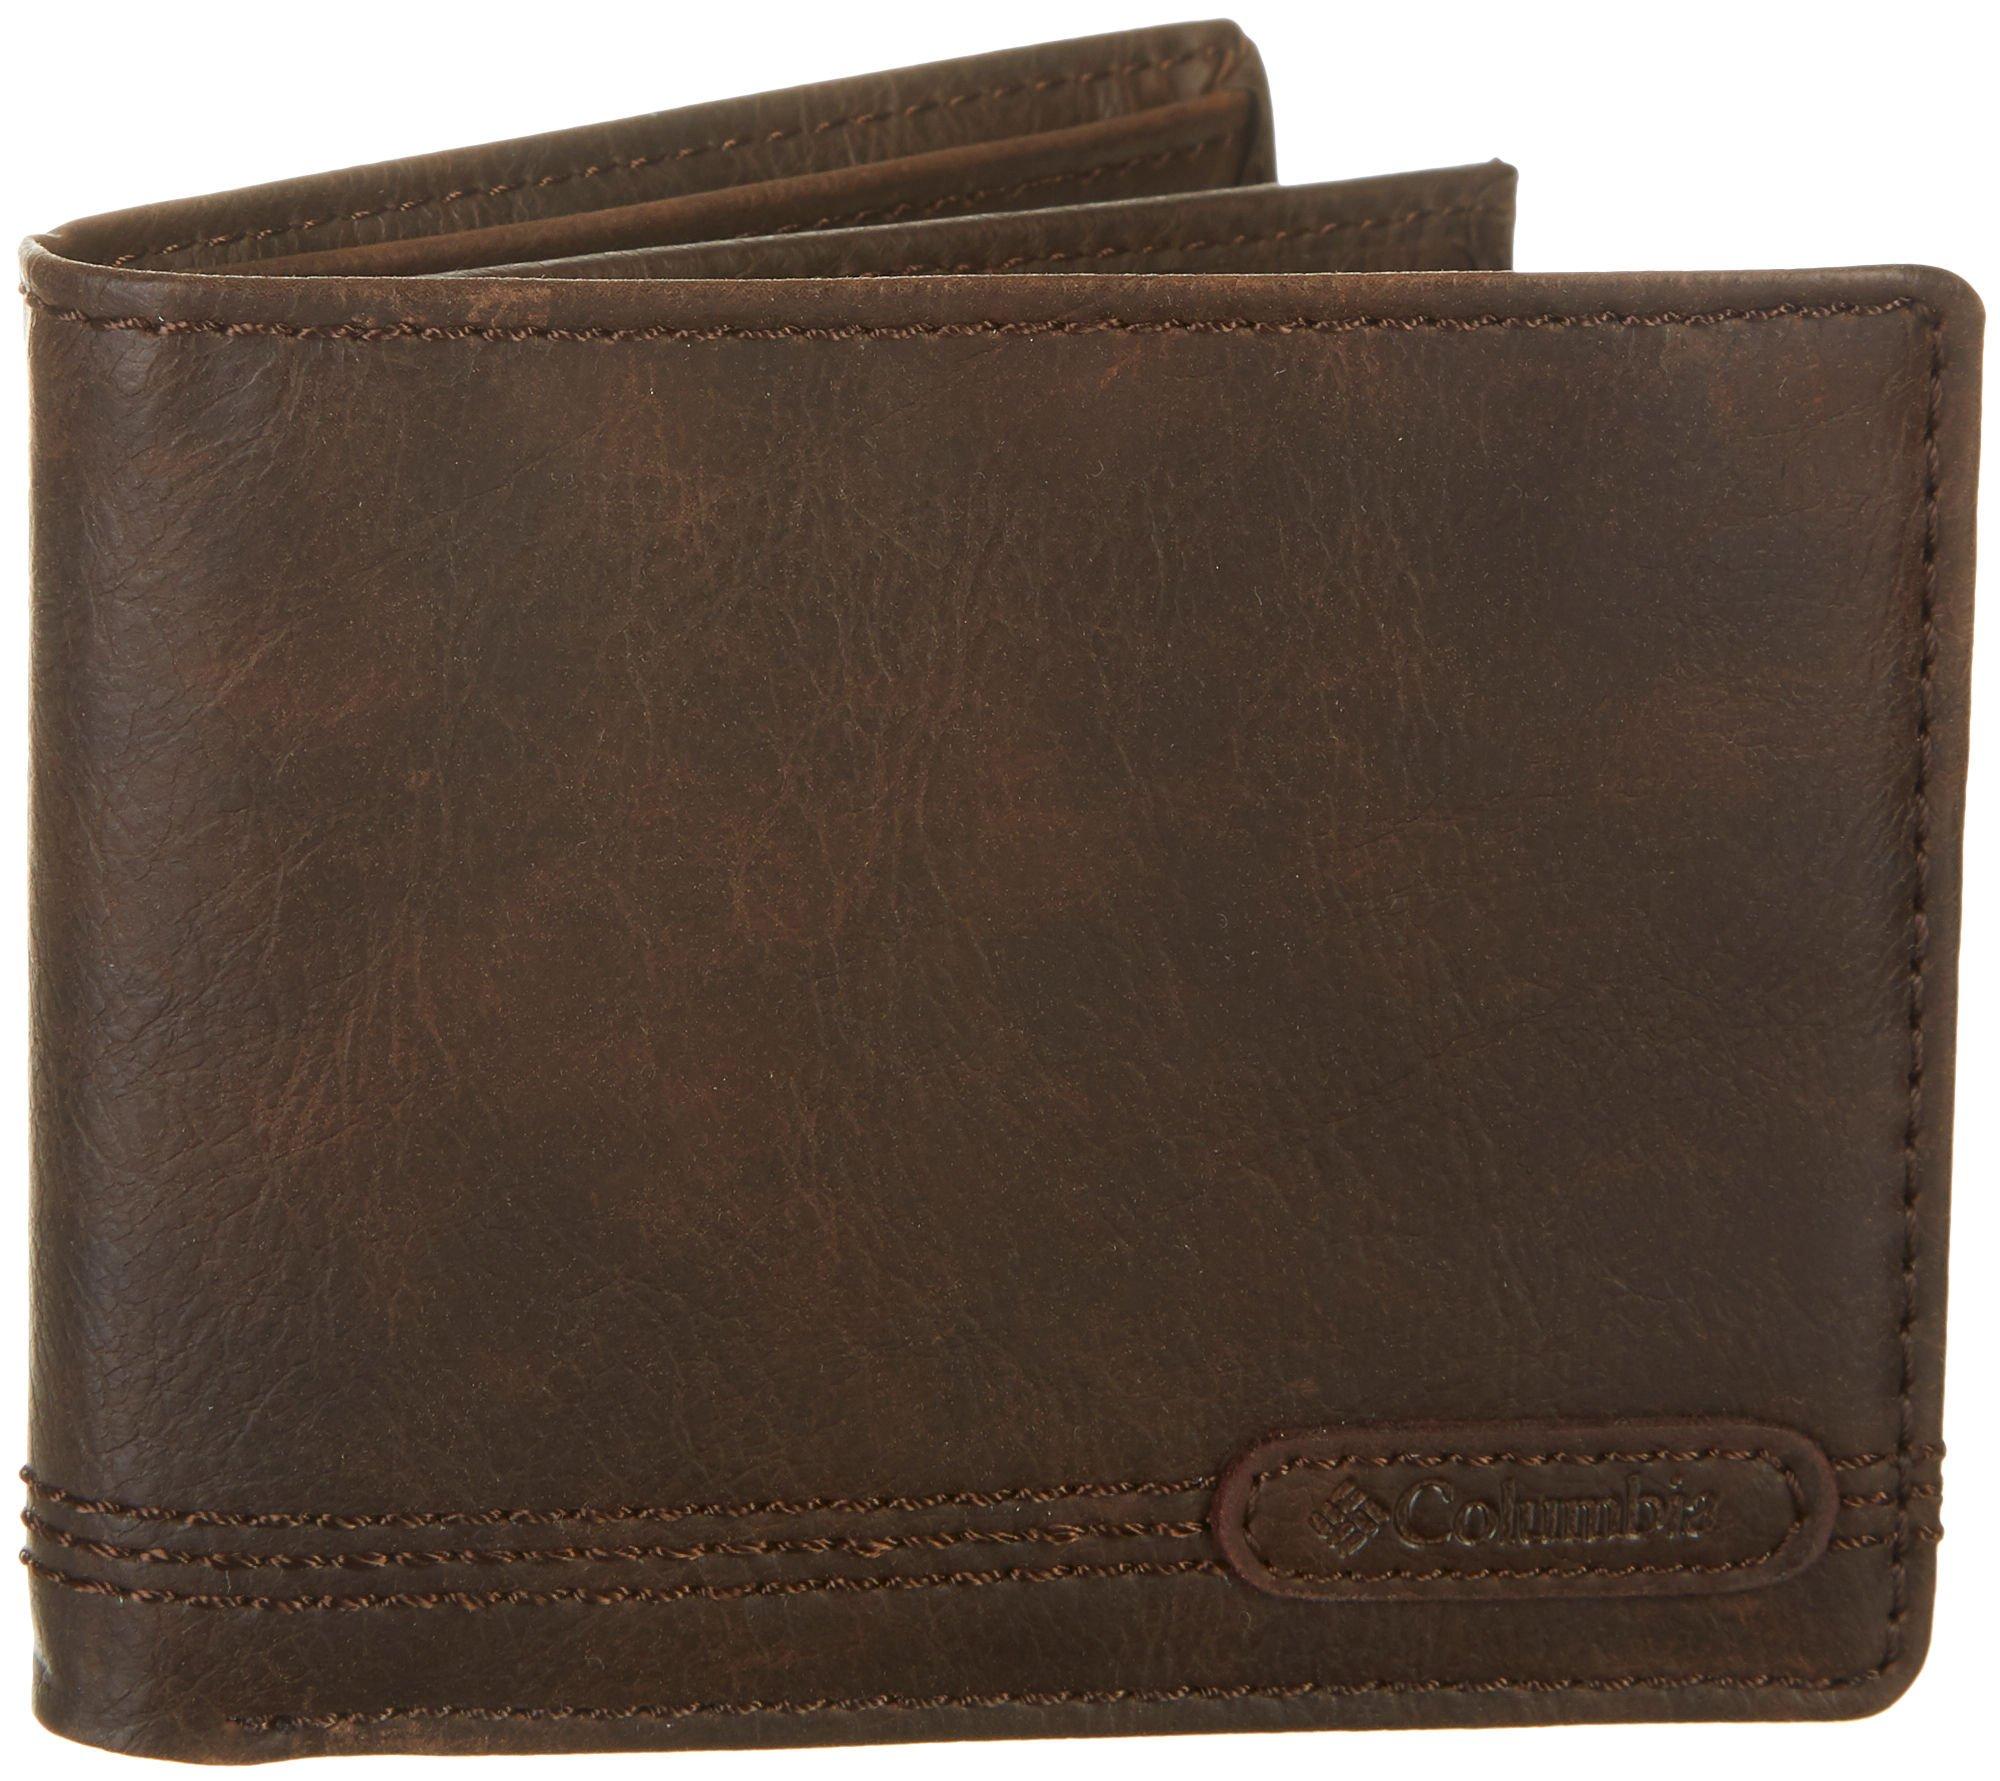 Quiksilver Men's Slim Rays Bi-Fold Wallet